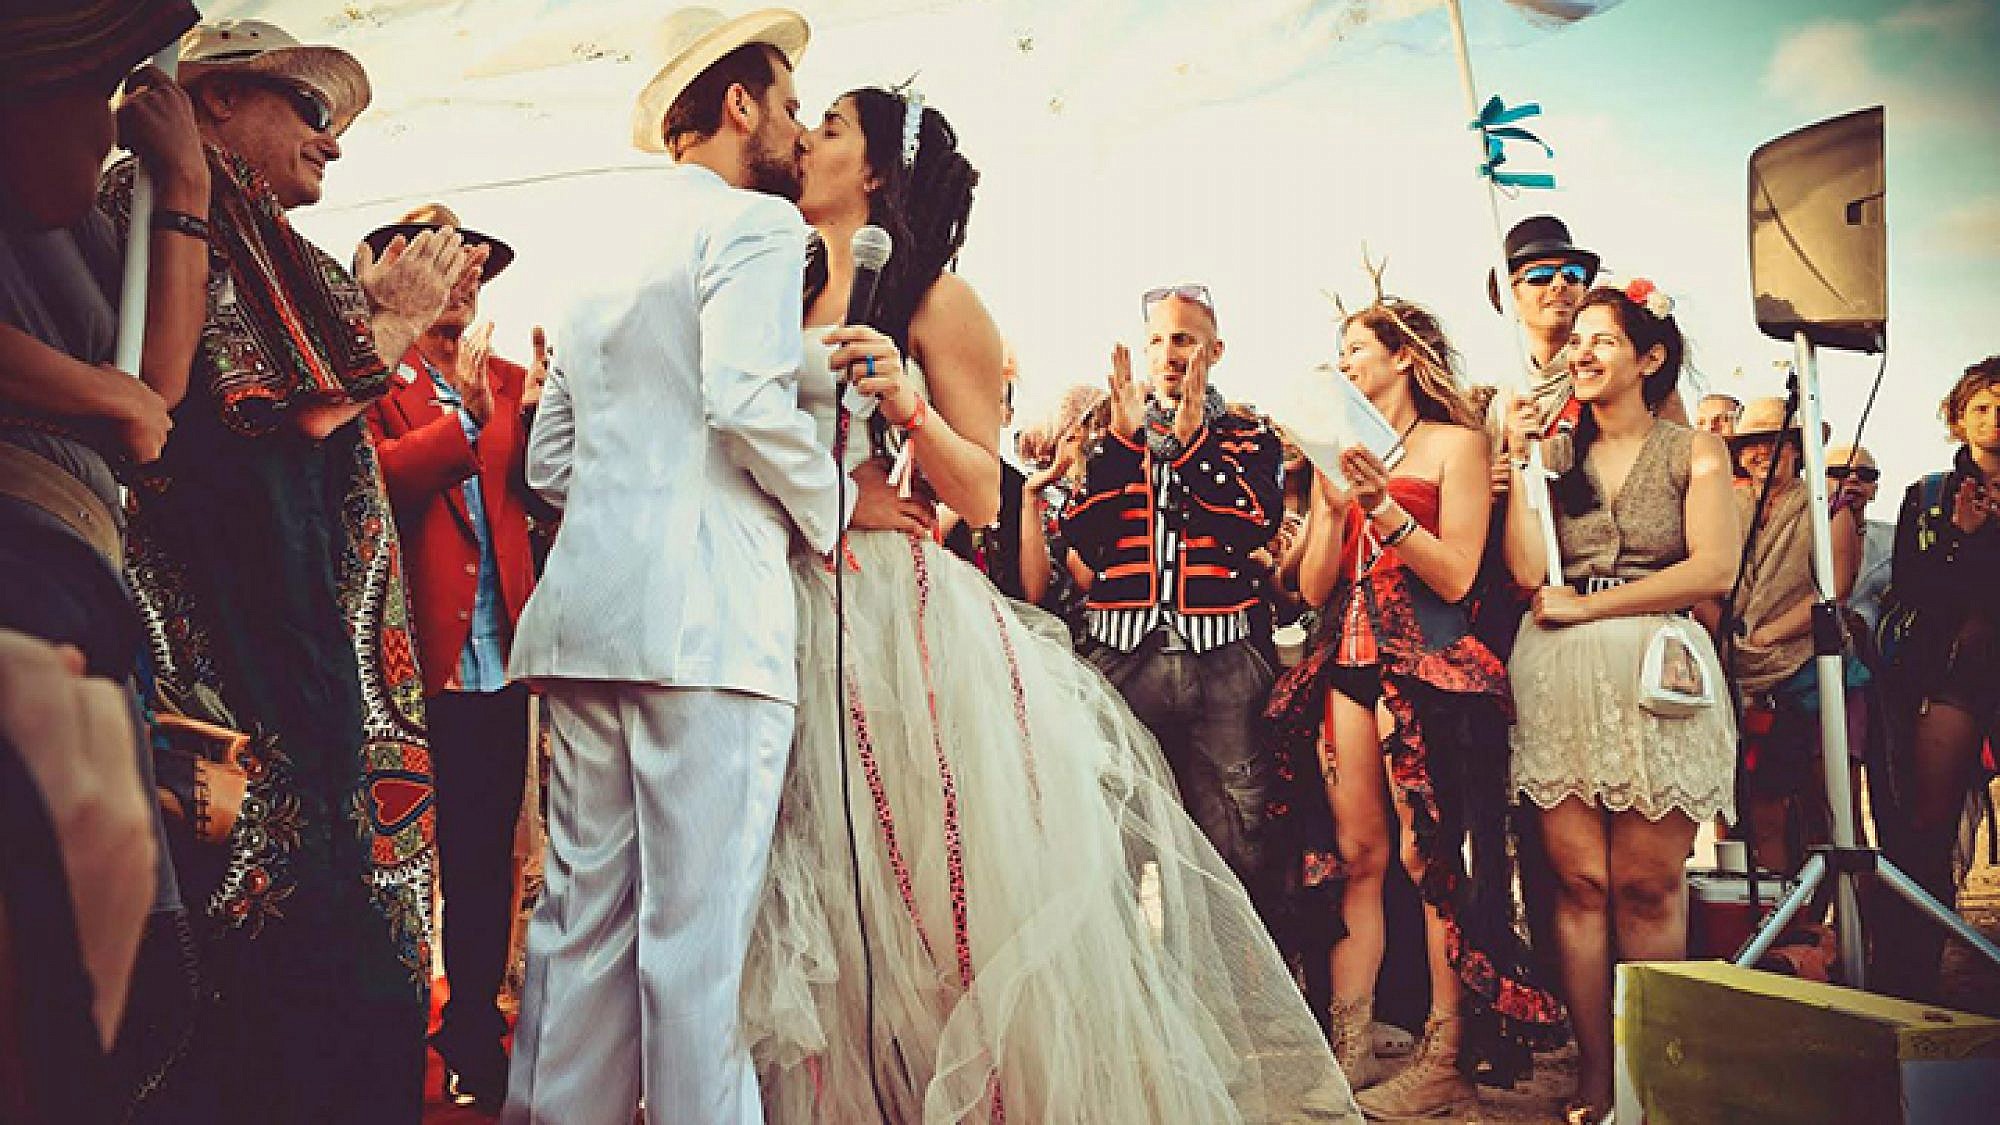 חתונה חברתית בפסטיבל מידברן 2015 | צילום: אילנית תורג'מן